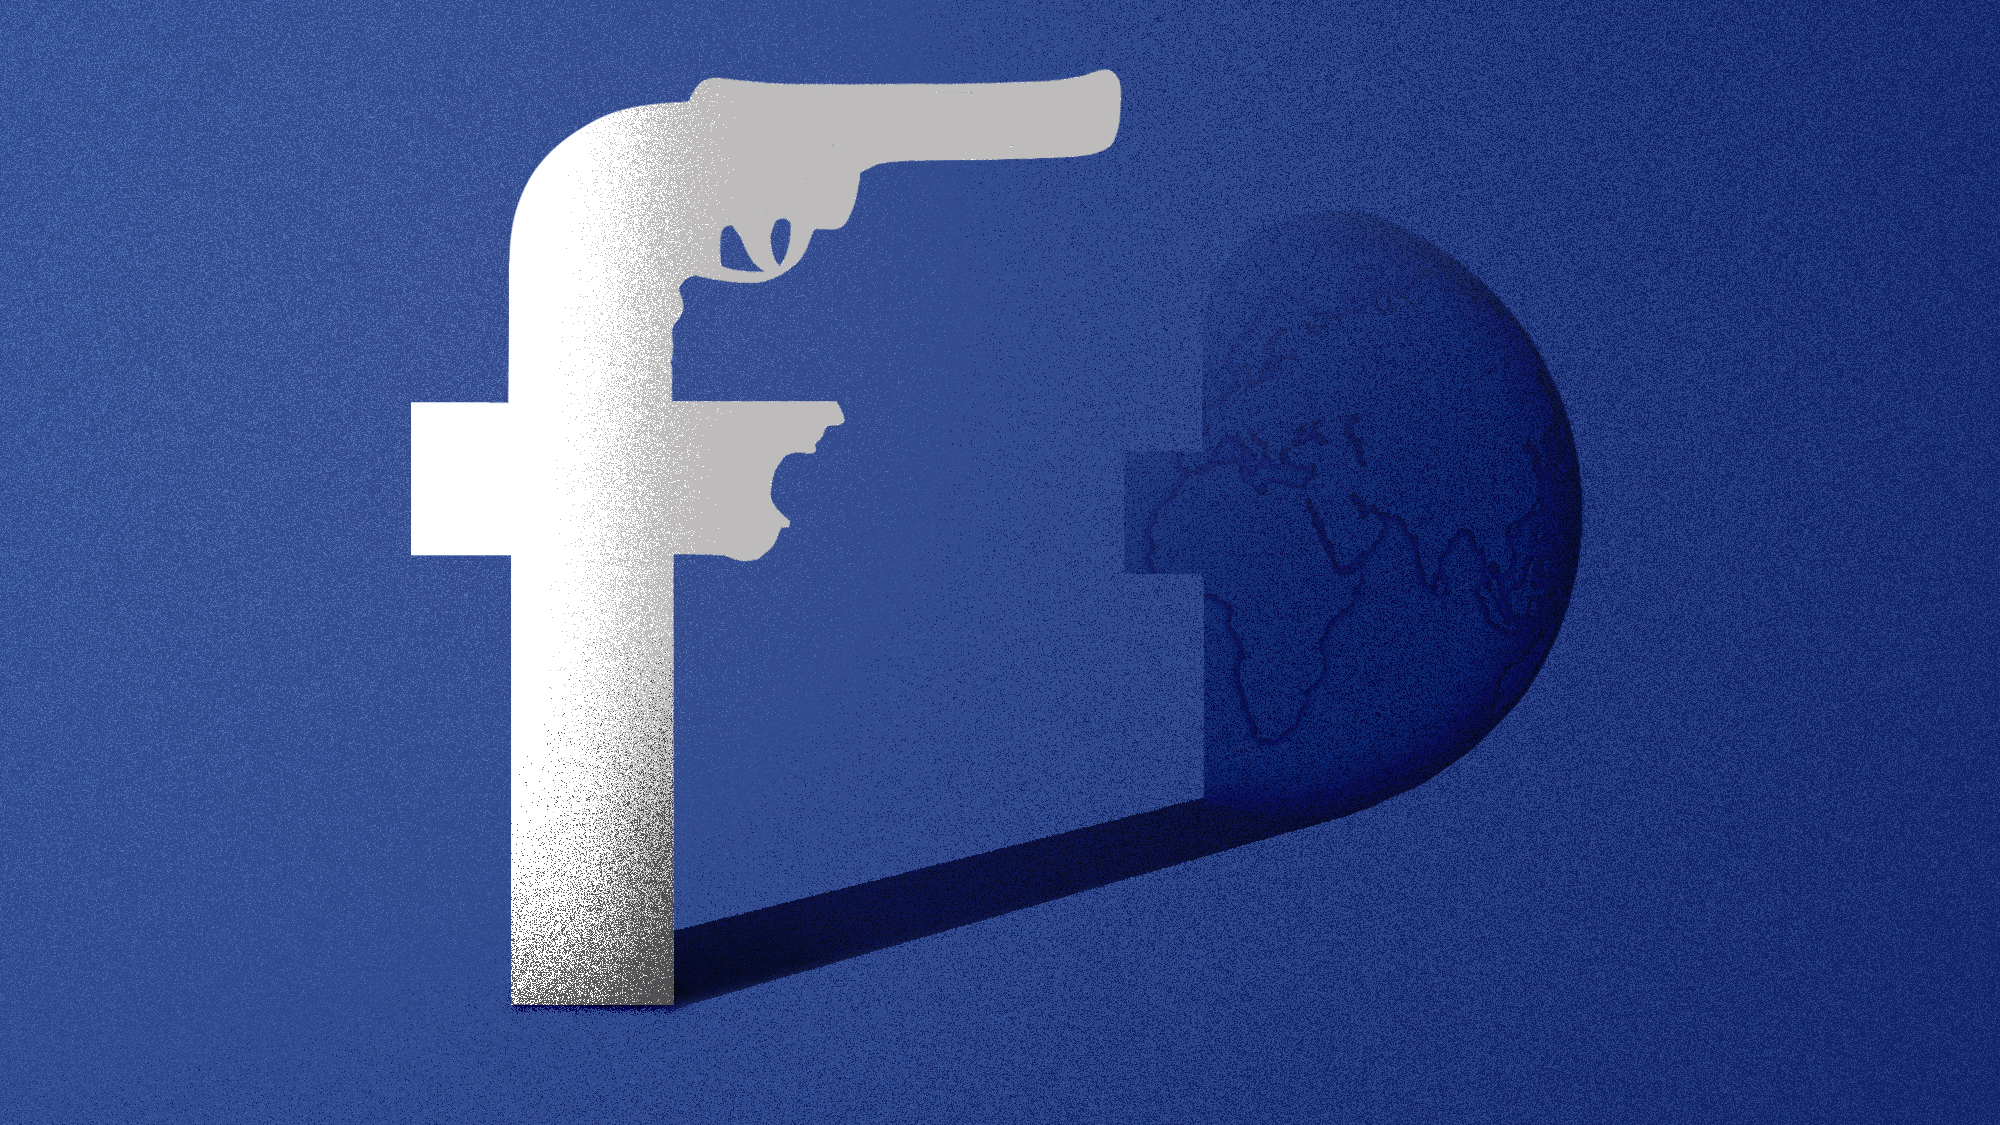 Facebook mindenhol van, gyűlöletbeszéd elleni harc csak nyugaton